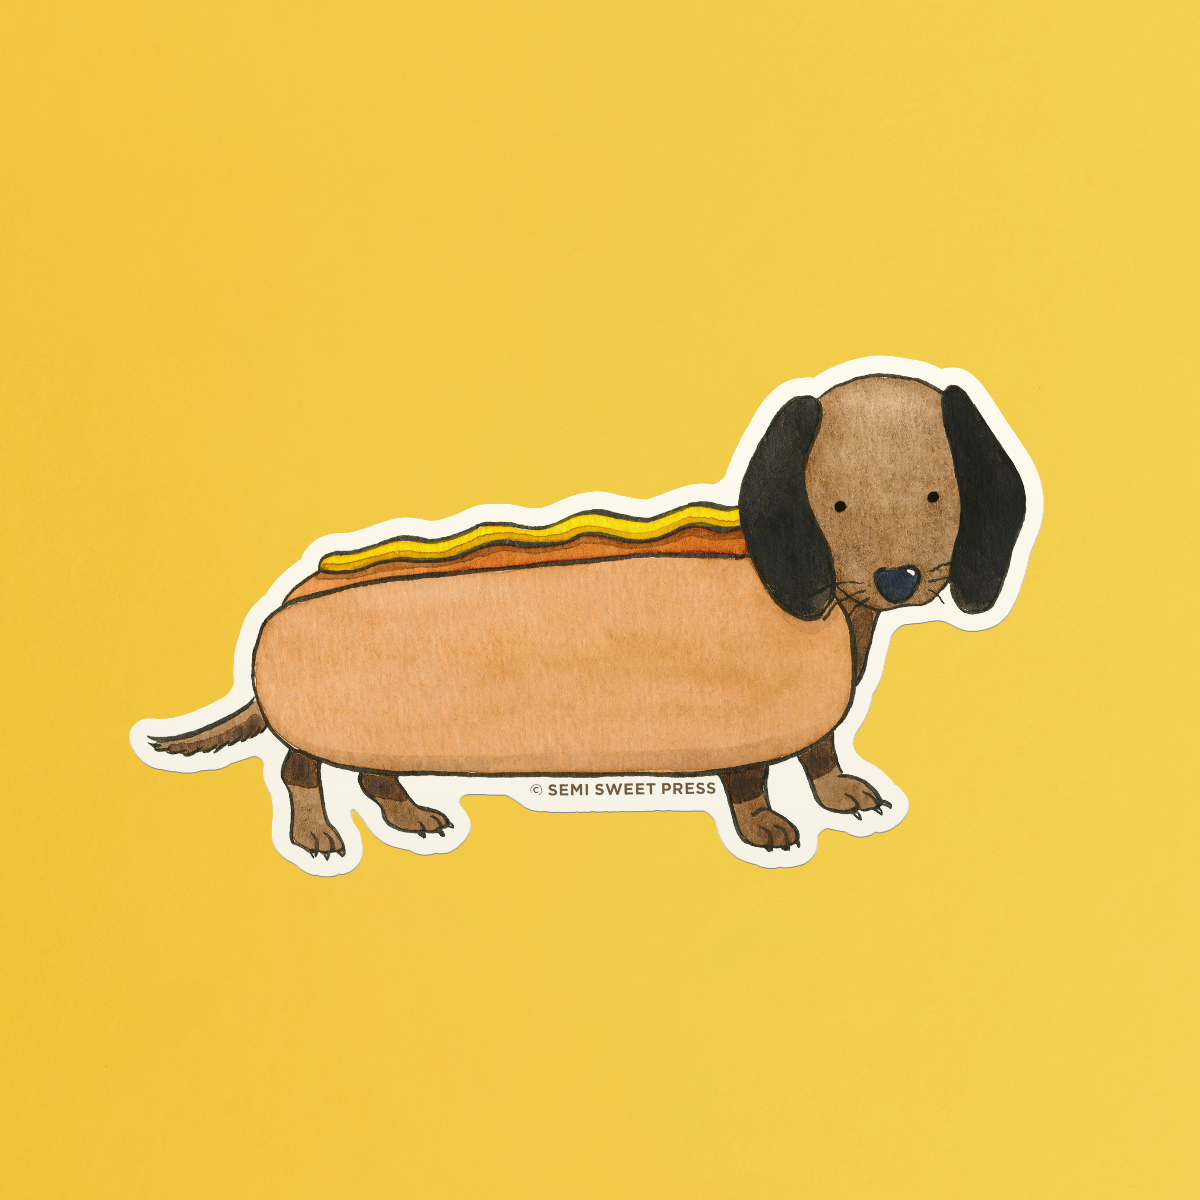 Hot Dog Weenie sticker